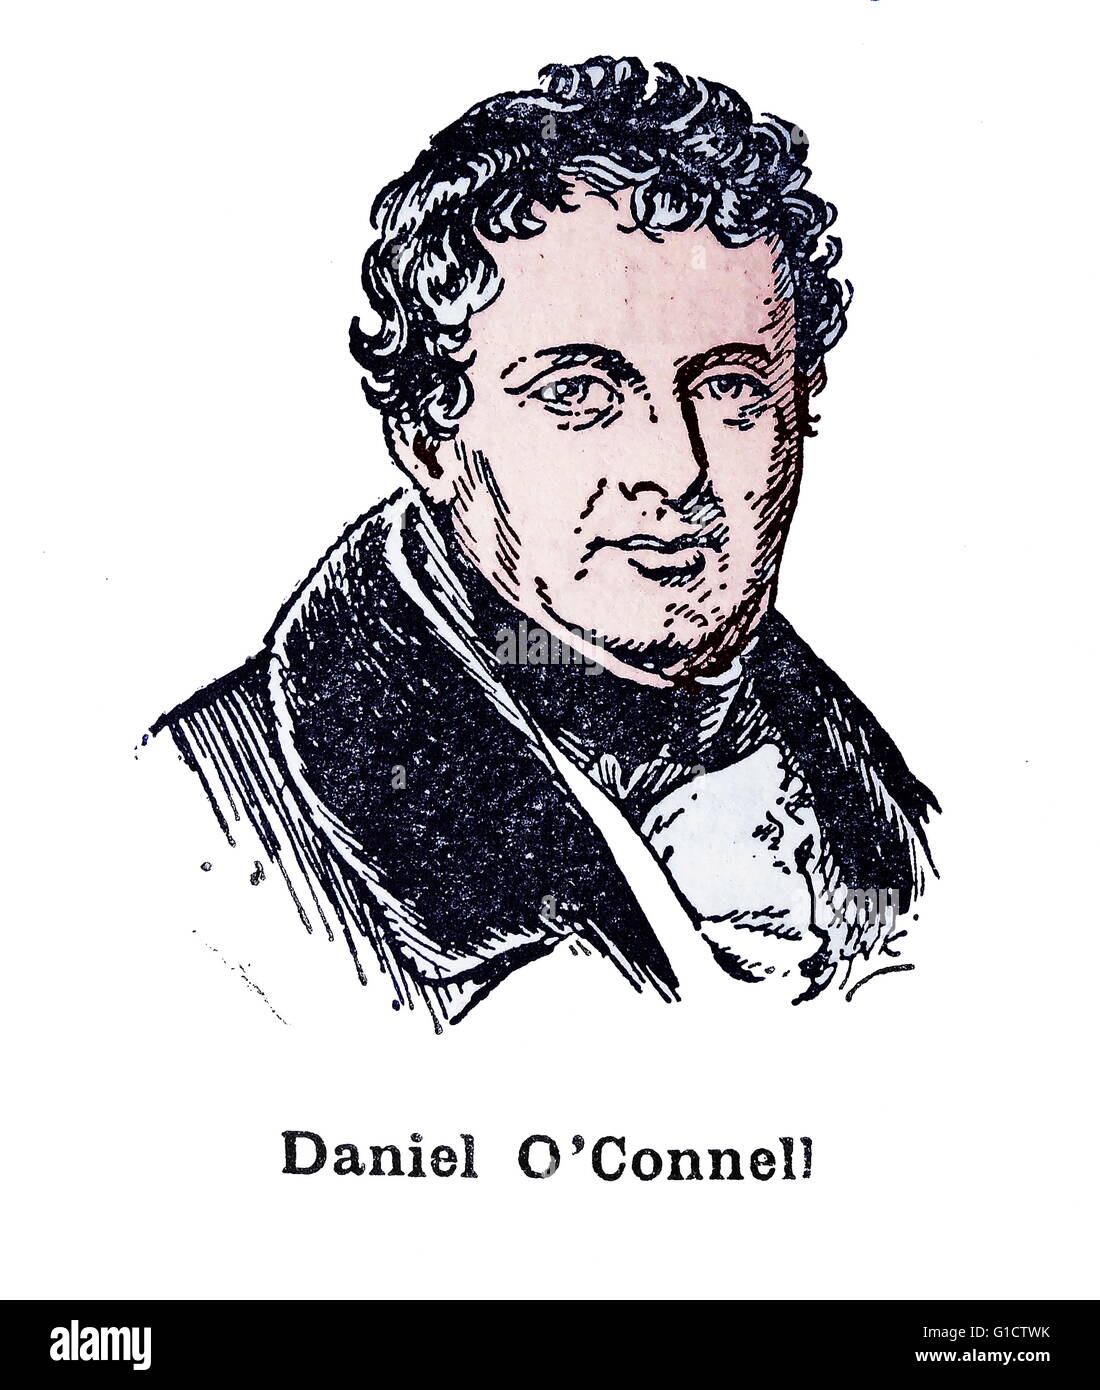 Daniel O'Connell (1775 - 1847) ; le libérateur ou l'émancipateur. Leader politique irlandaise dans la première moitié du 19e siècle Banque D'Images